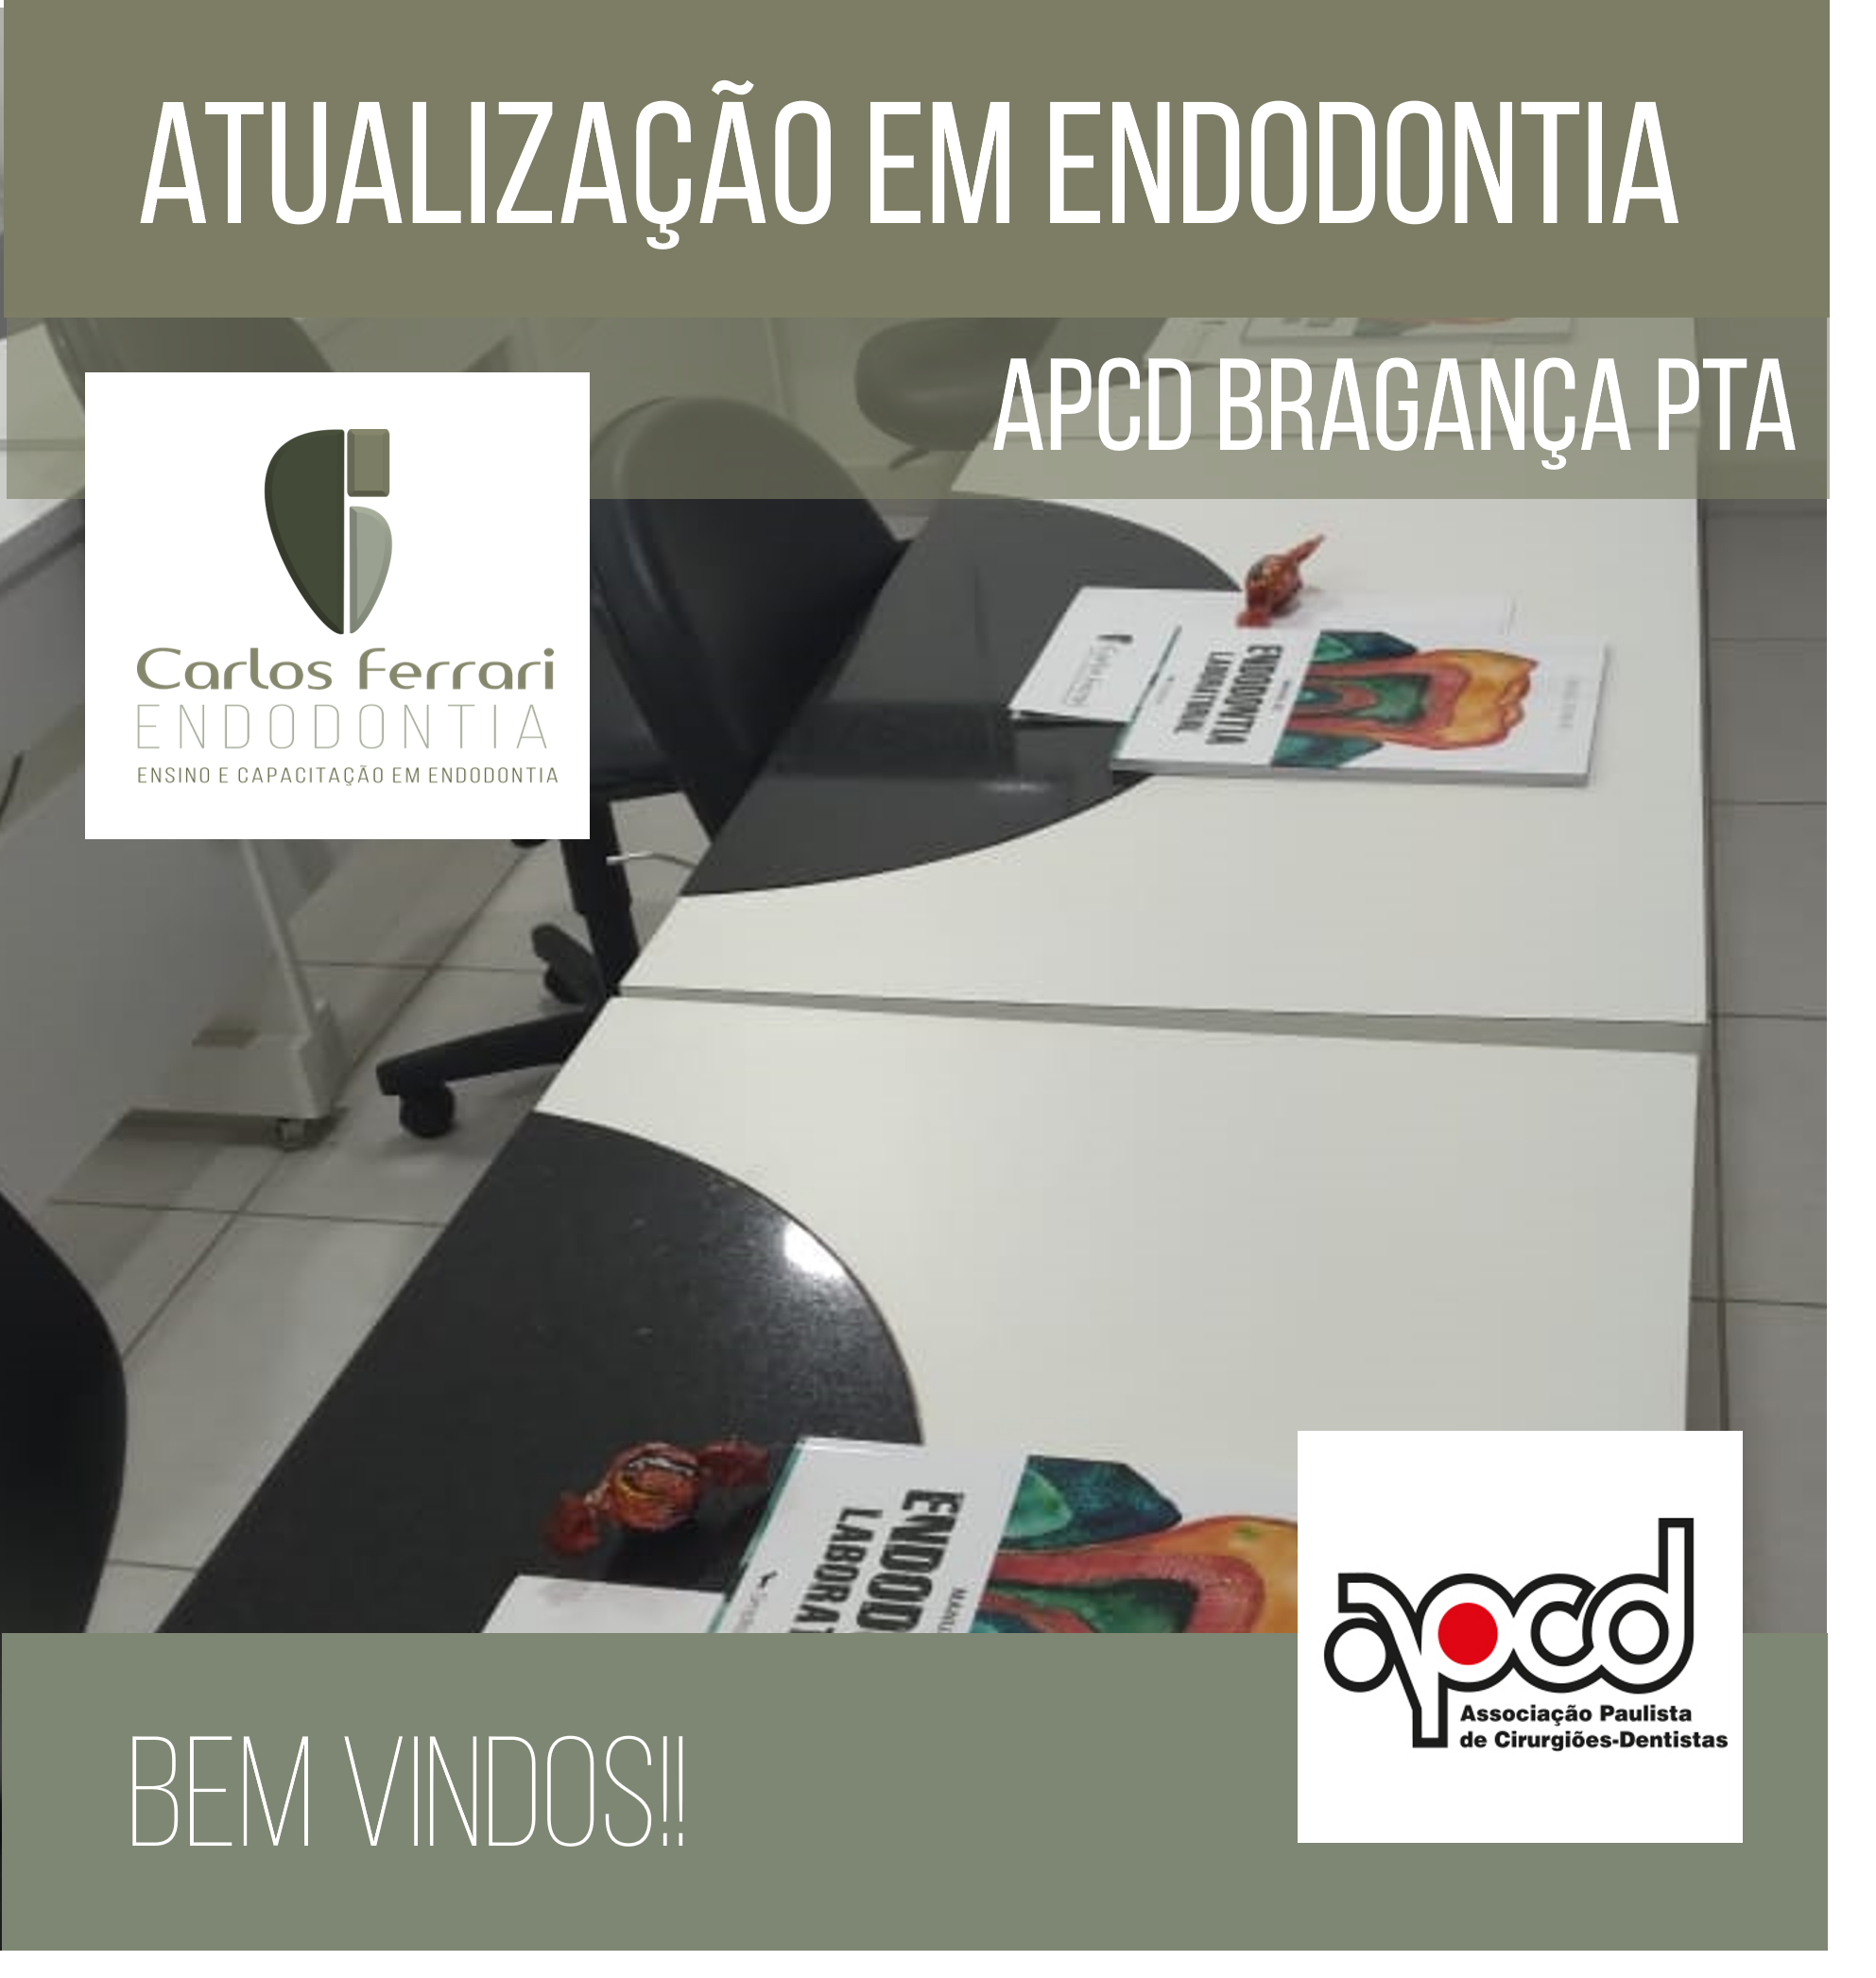 You are currently viewing Atualização em endodontia em Bragança Paulista